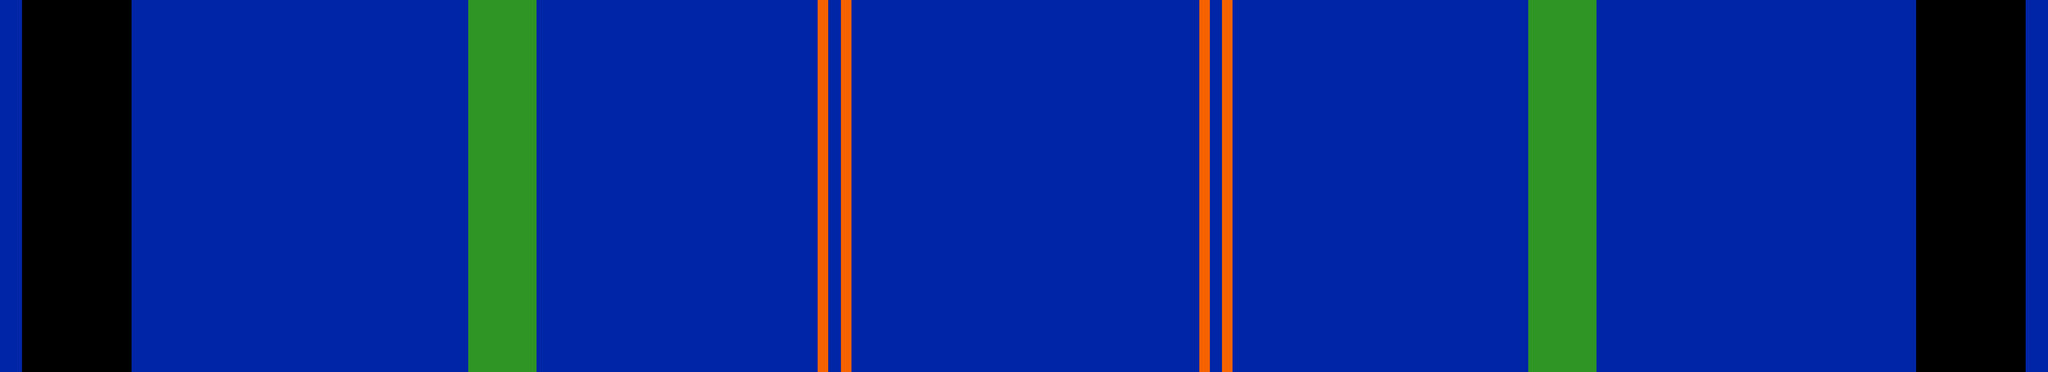 Color Palette Cobalt Blue Orange Green